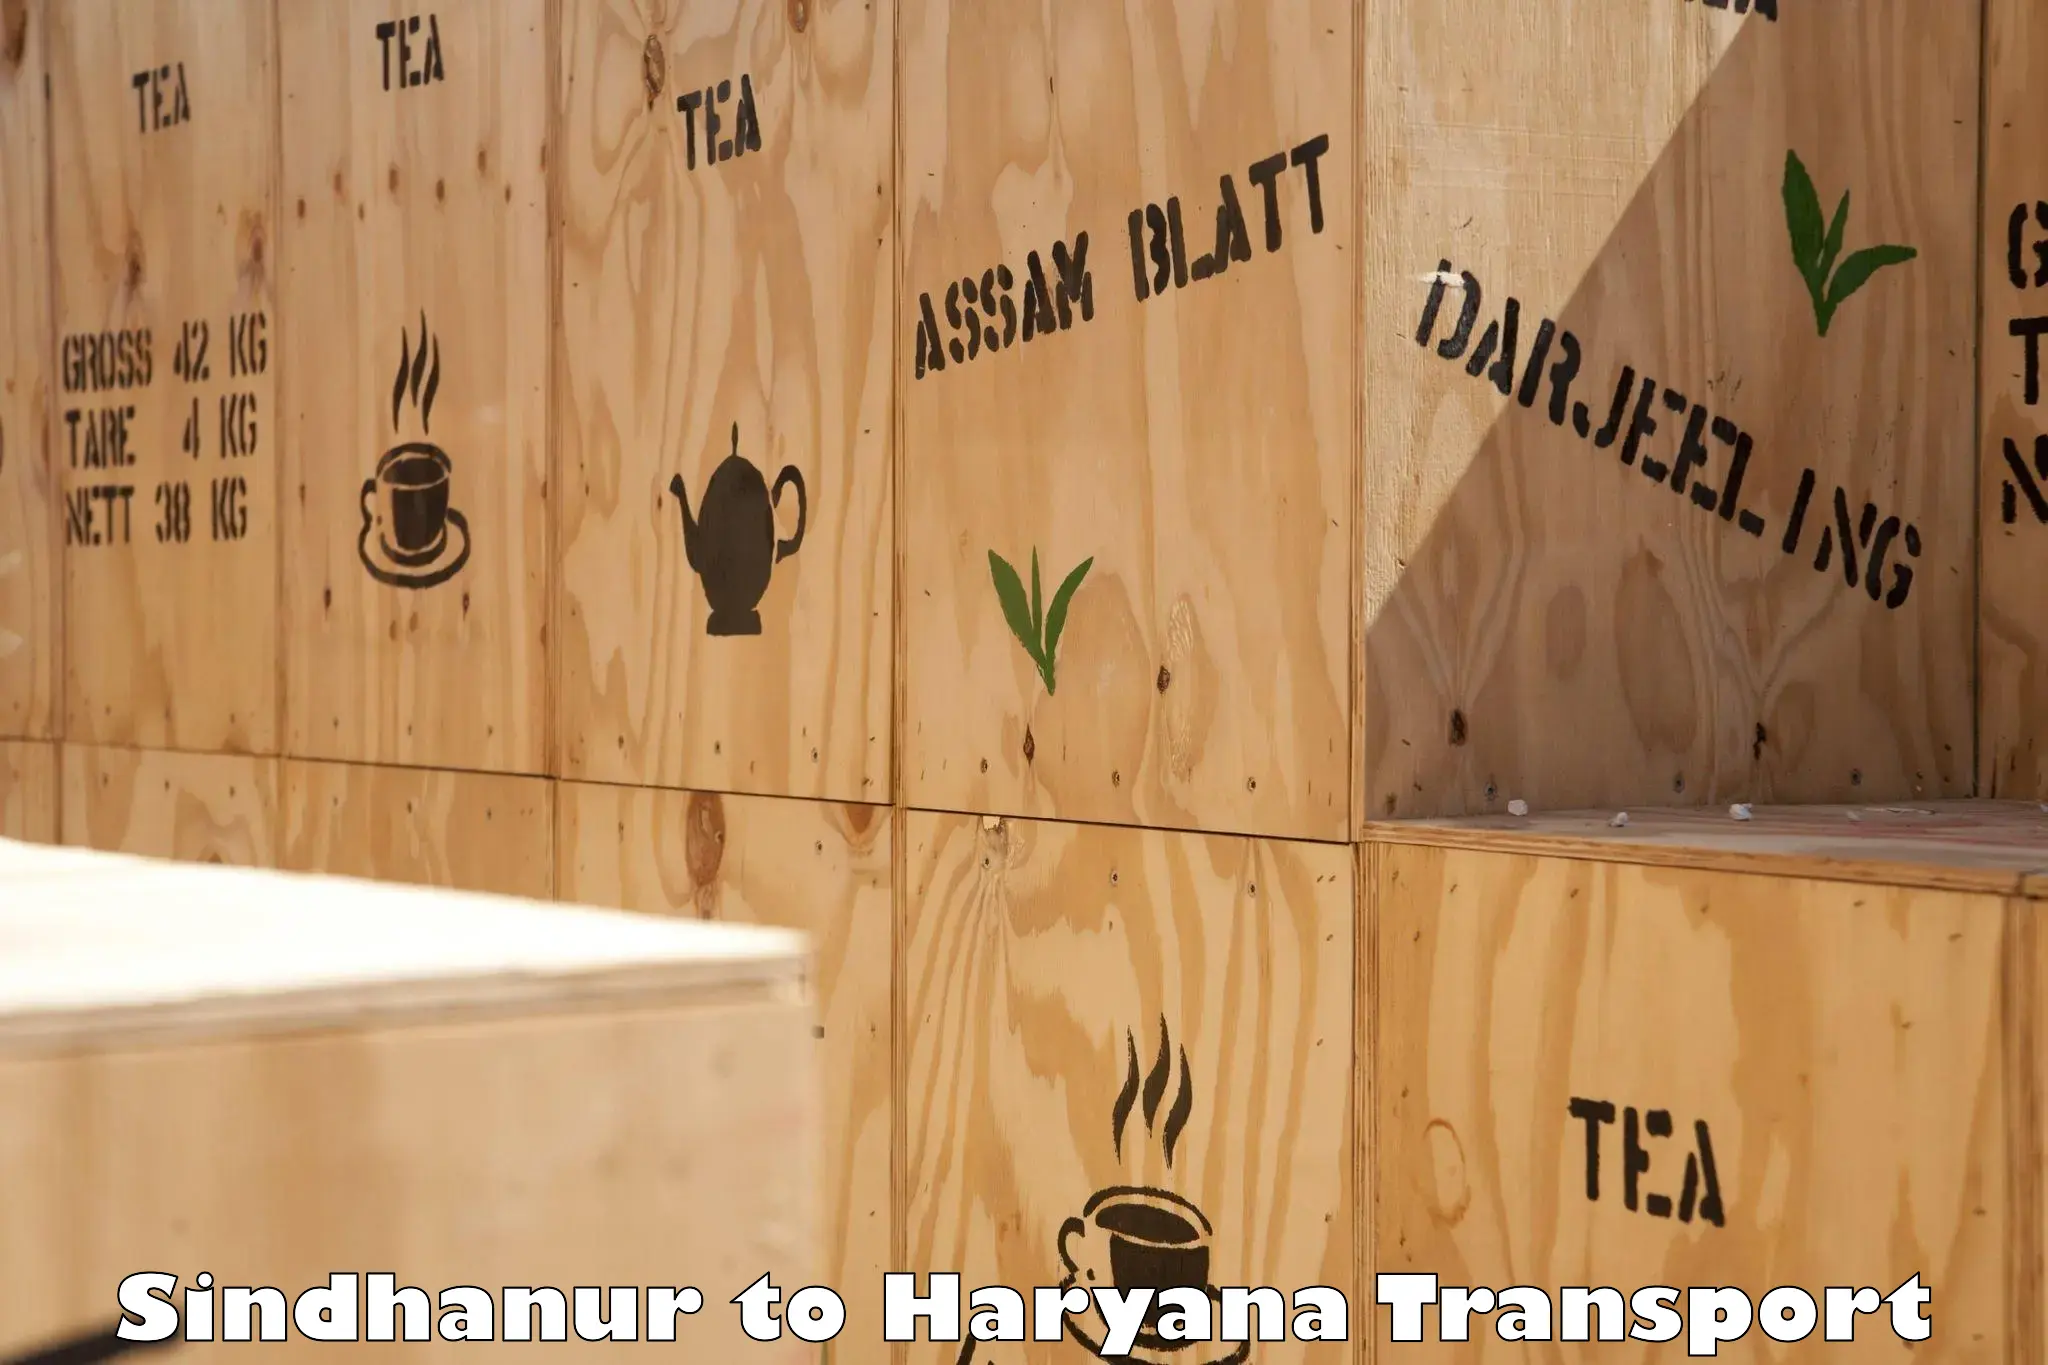 Furniture transport service Sindhanur to Palwal